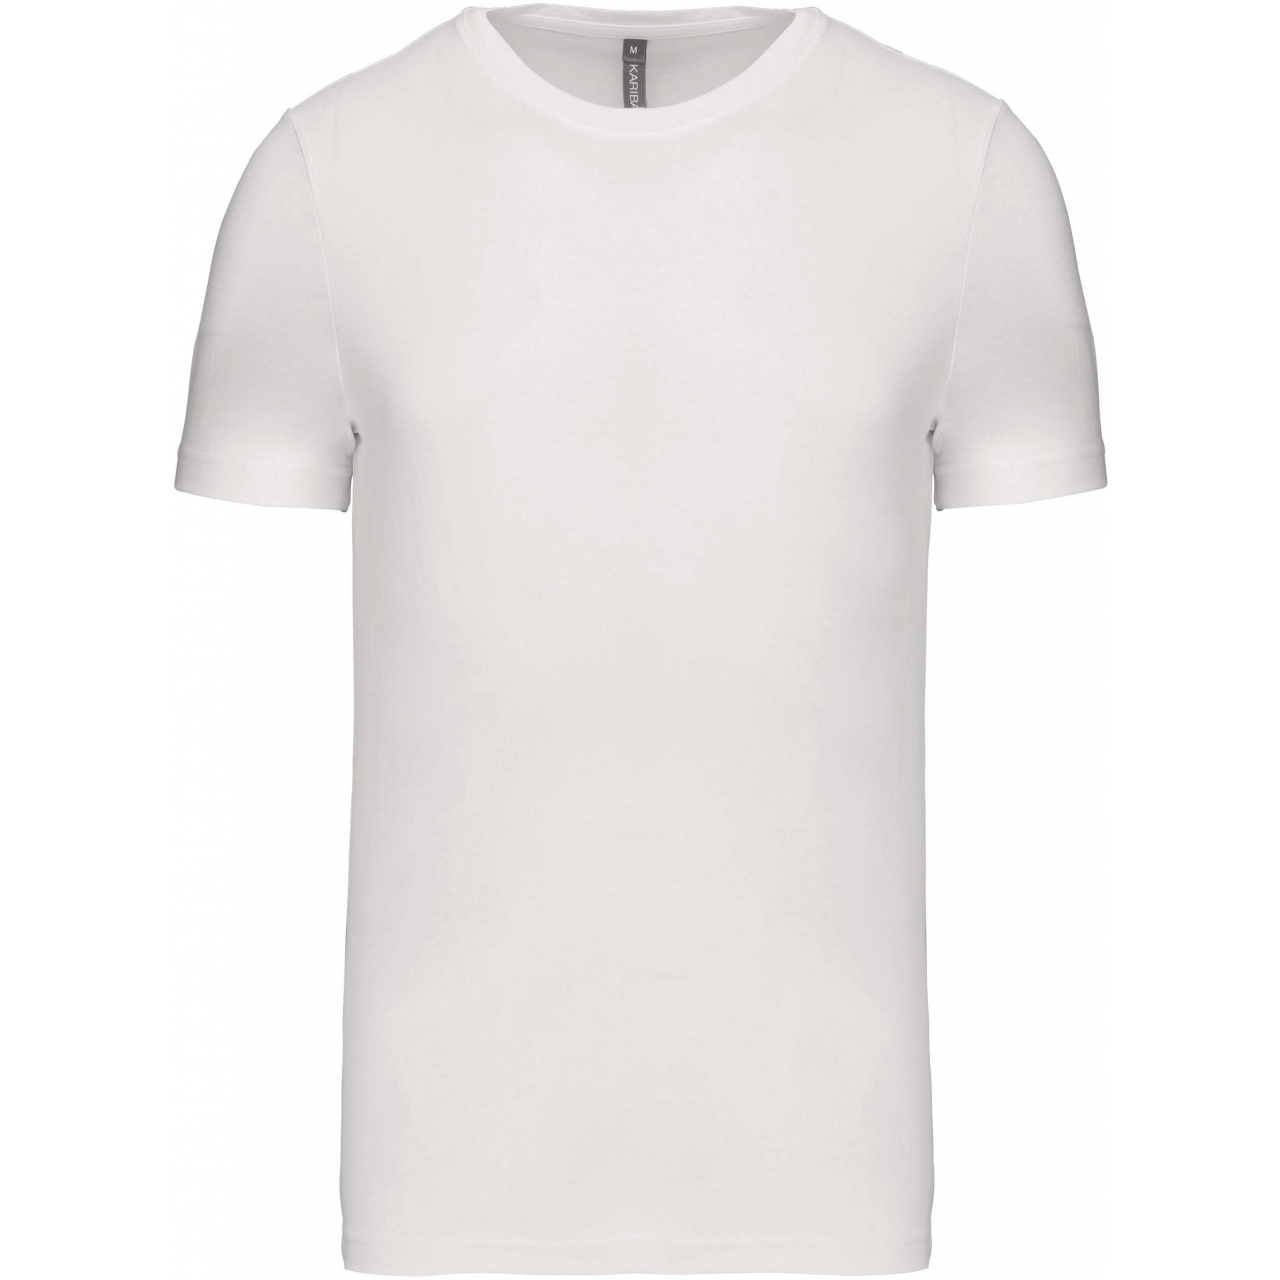 Pánské tričko Kariban krátký rukáv - bílé, M